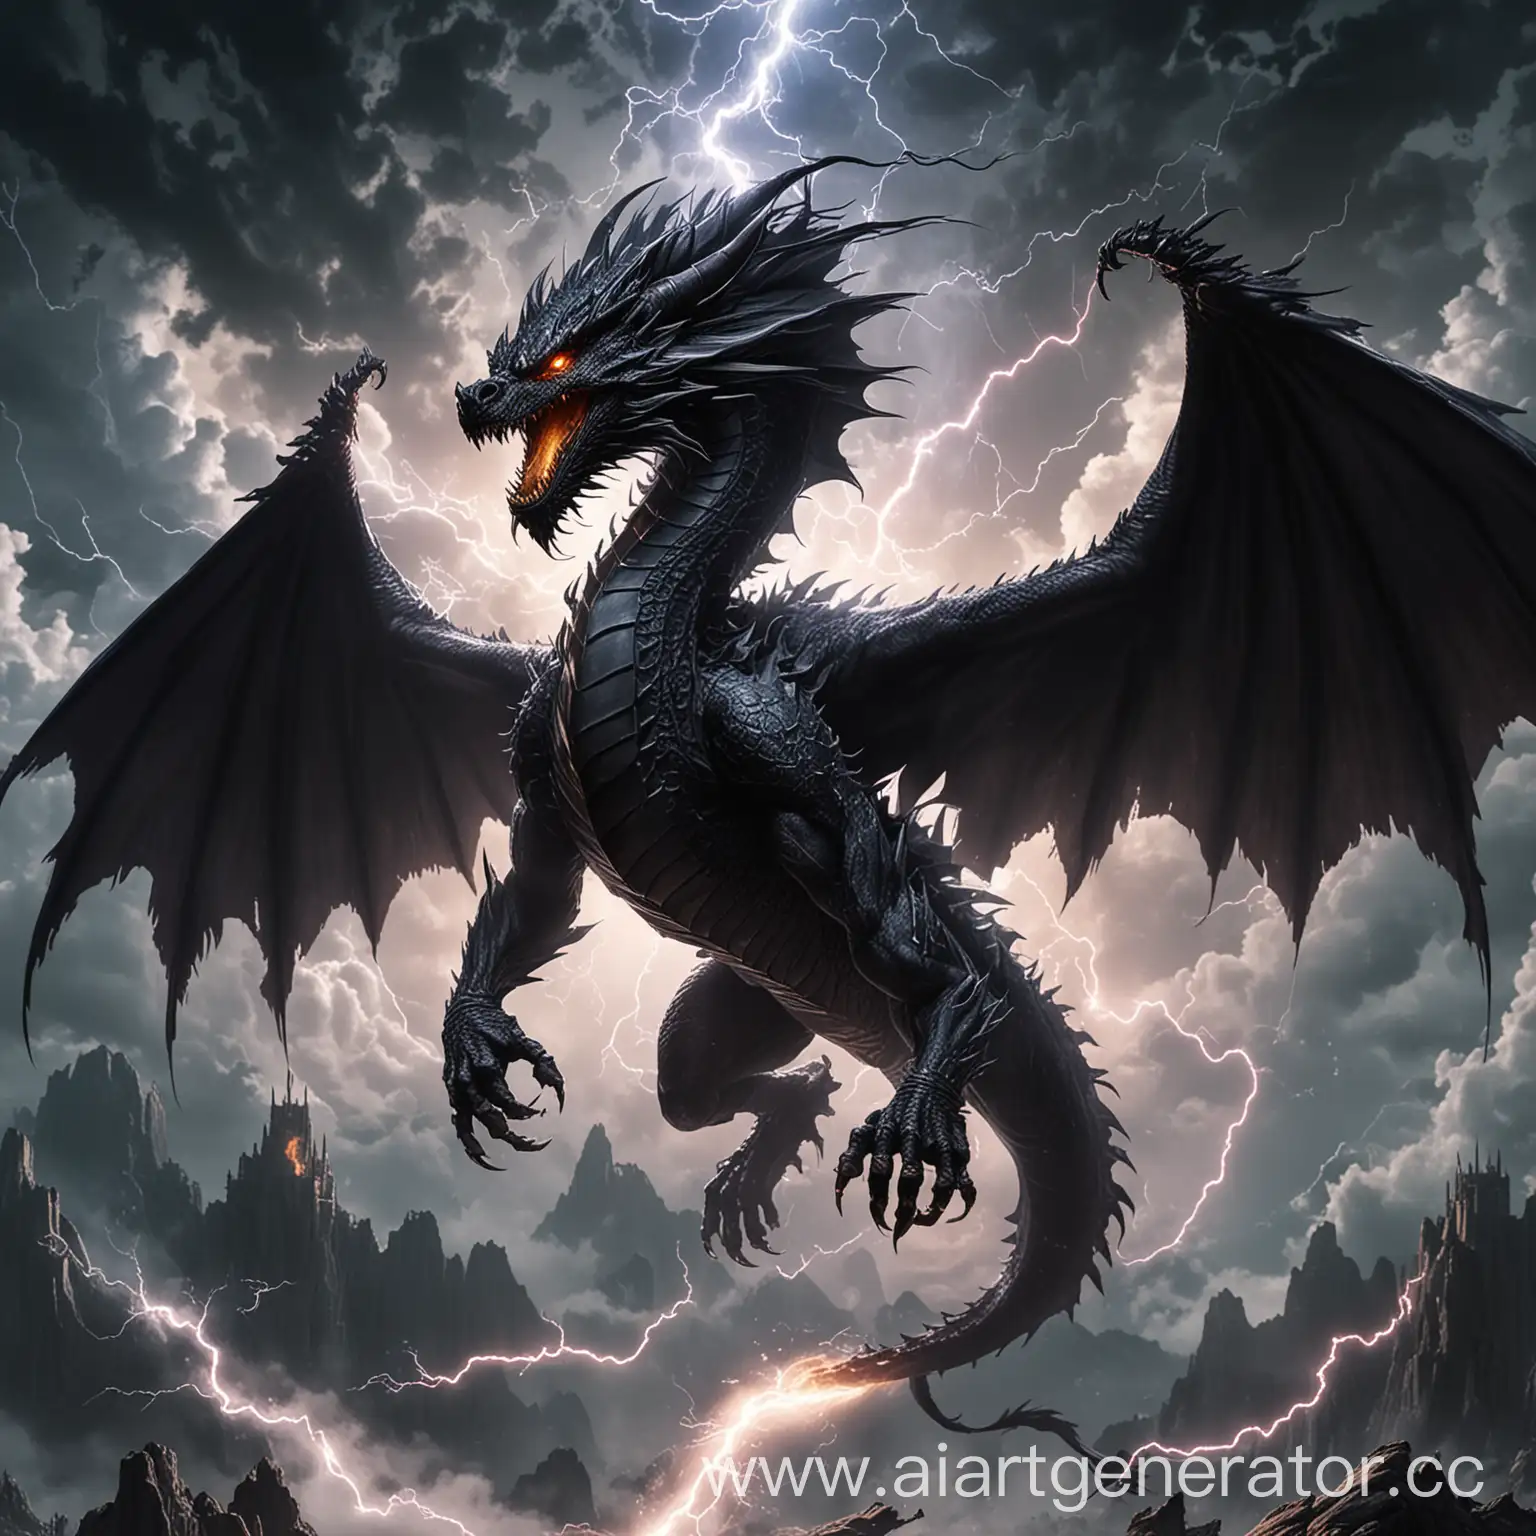 Чёрный дракон которы владеет стихией молнии парит в воздухе